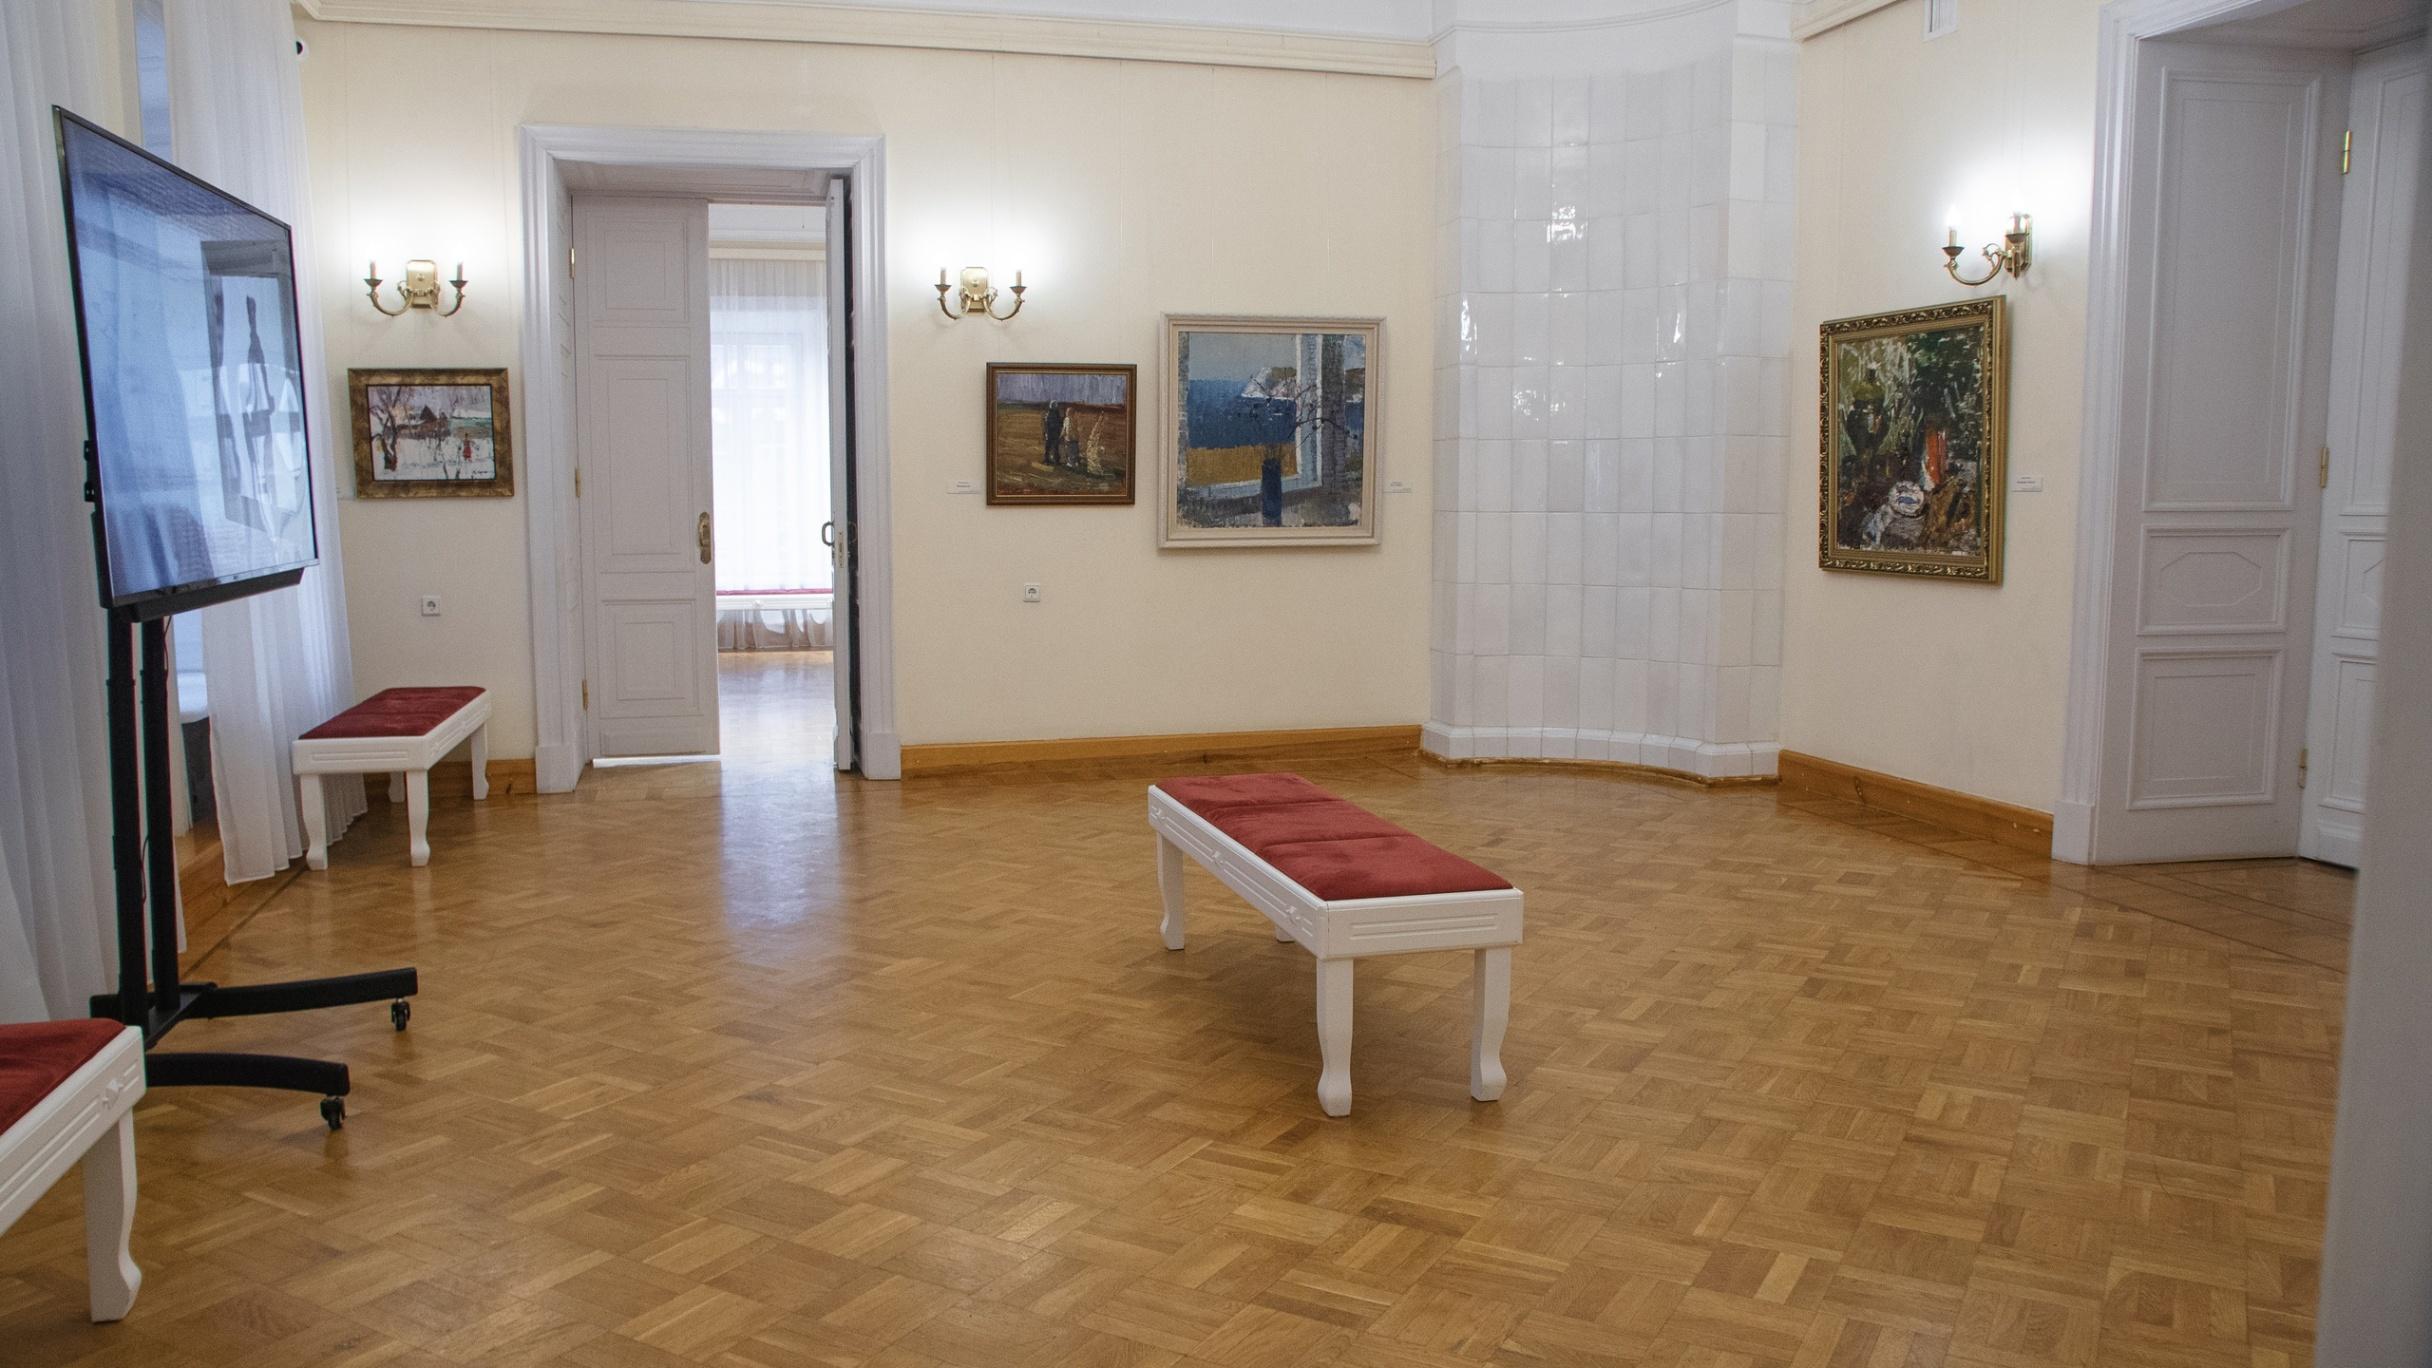 Липецкий музейно-выставочный центр, афиша на 30 июня – афиша